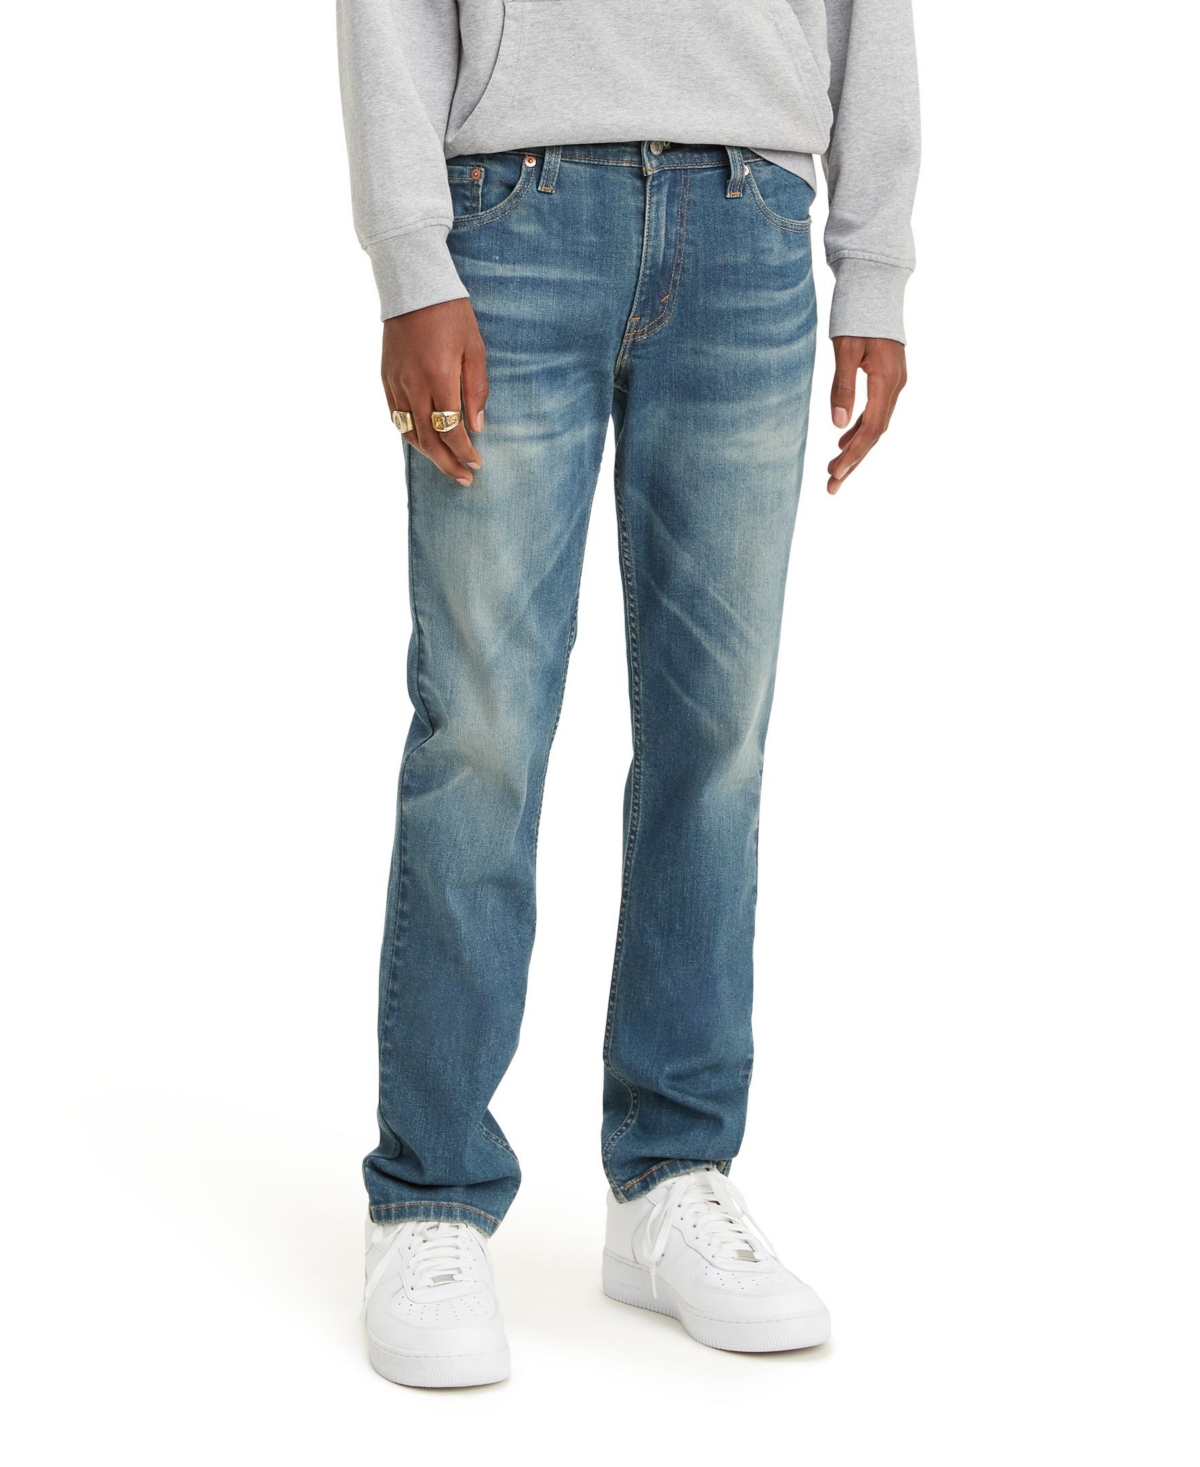 Levi's Flex Men's 511 Slim Fit Jeans